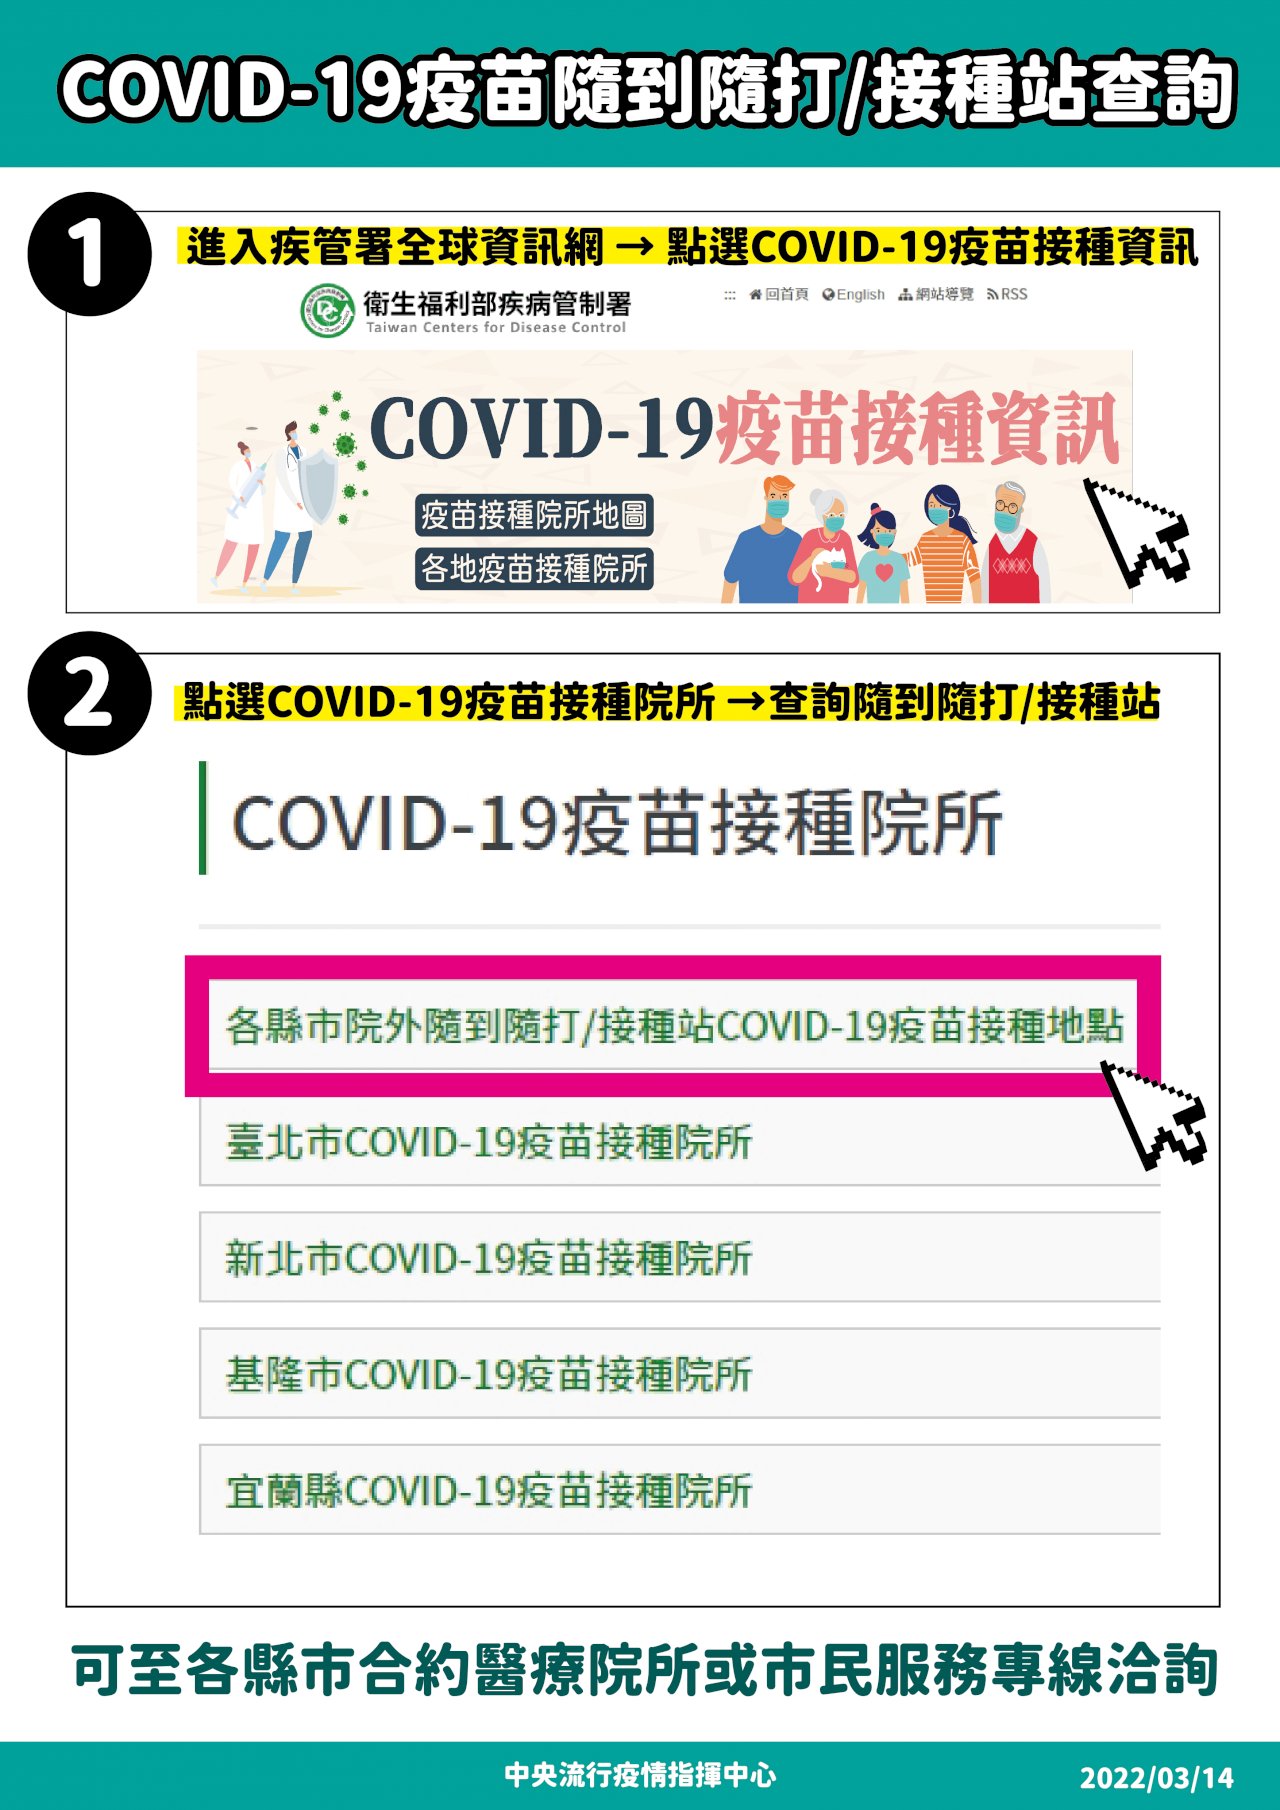 提高施打率 疾管署推「COVID-19疫苗接種資訊」更方便查詢